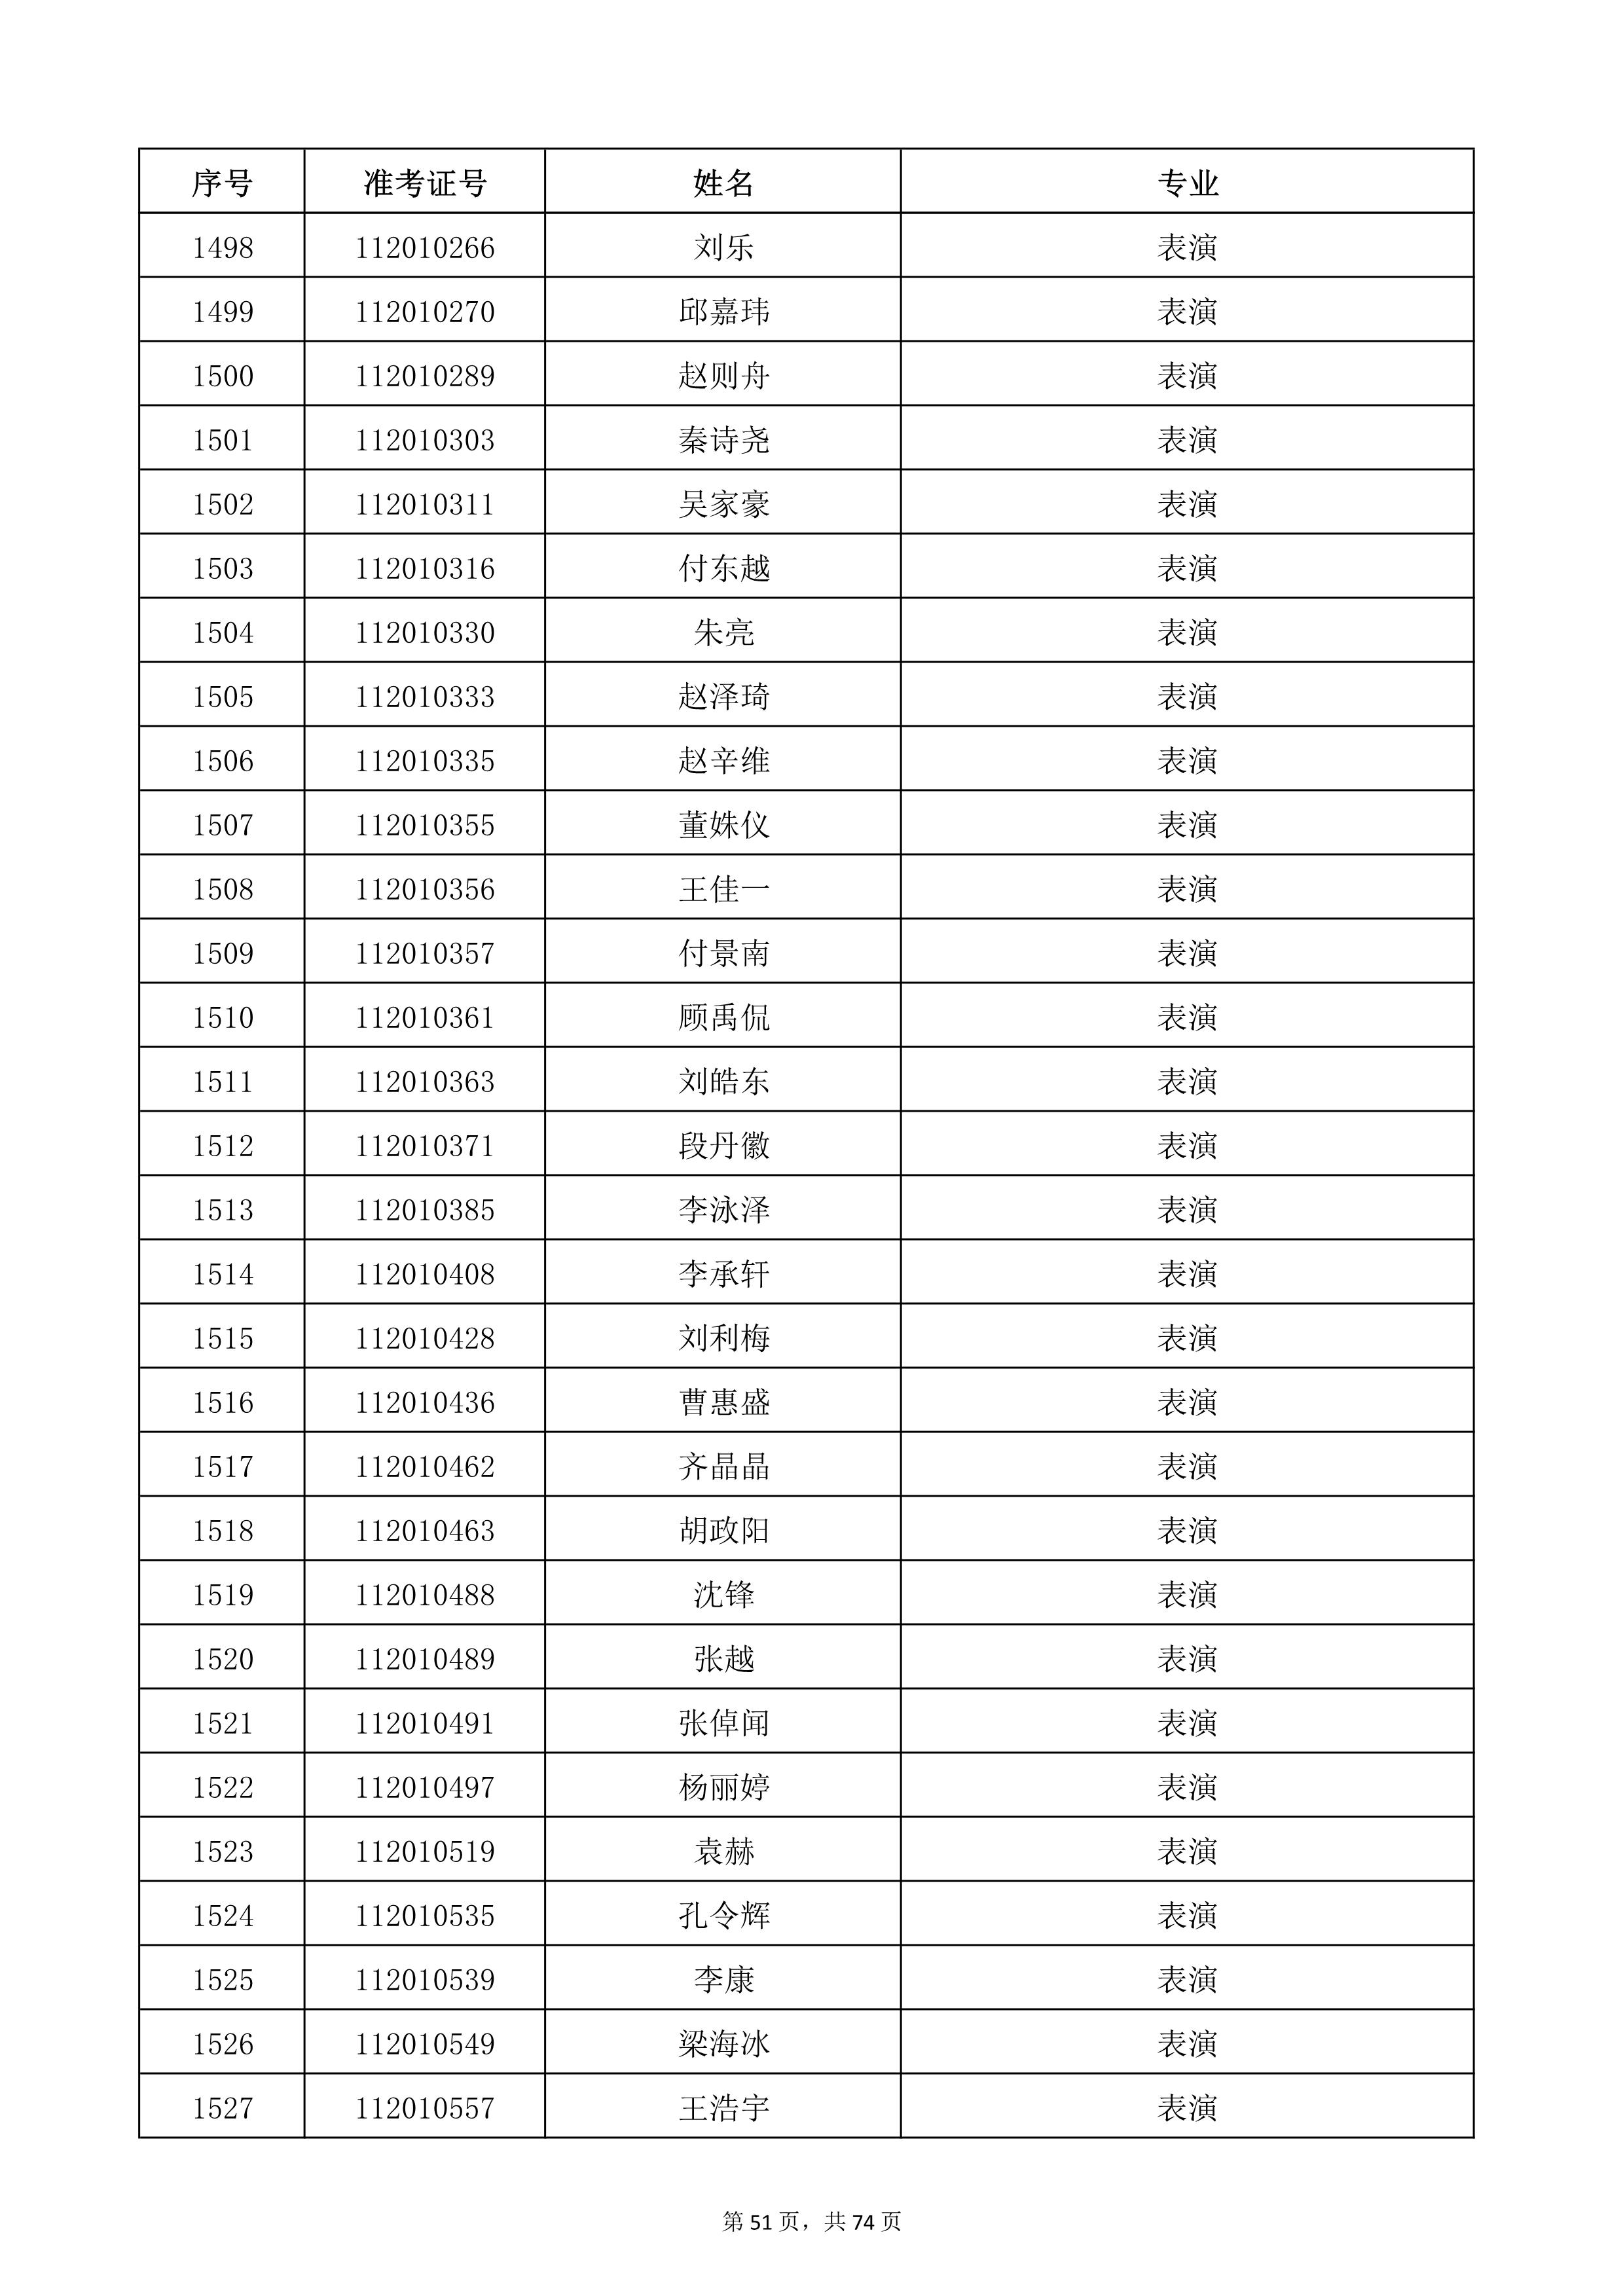 天津音乐学院2022年本科招生考试复试名单_51.jpg